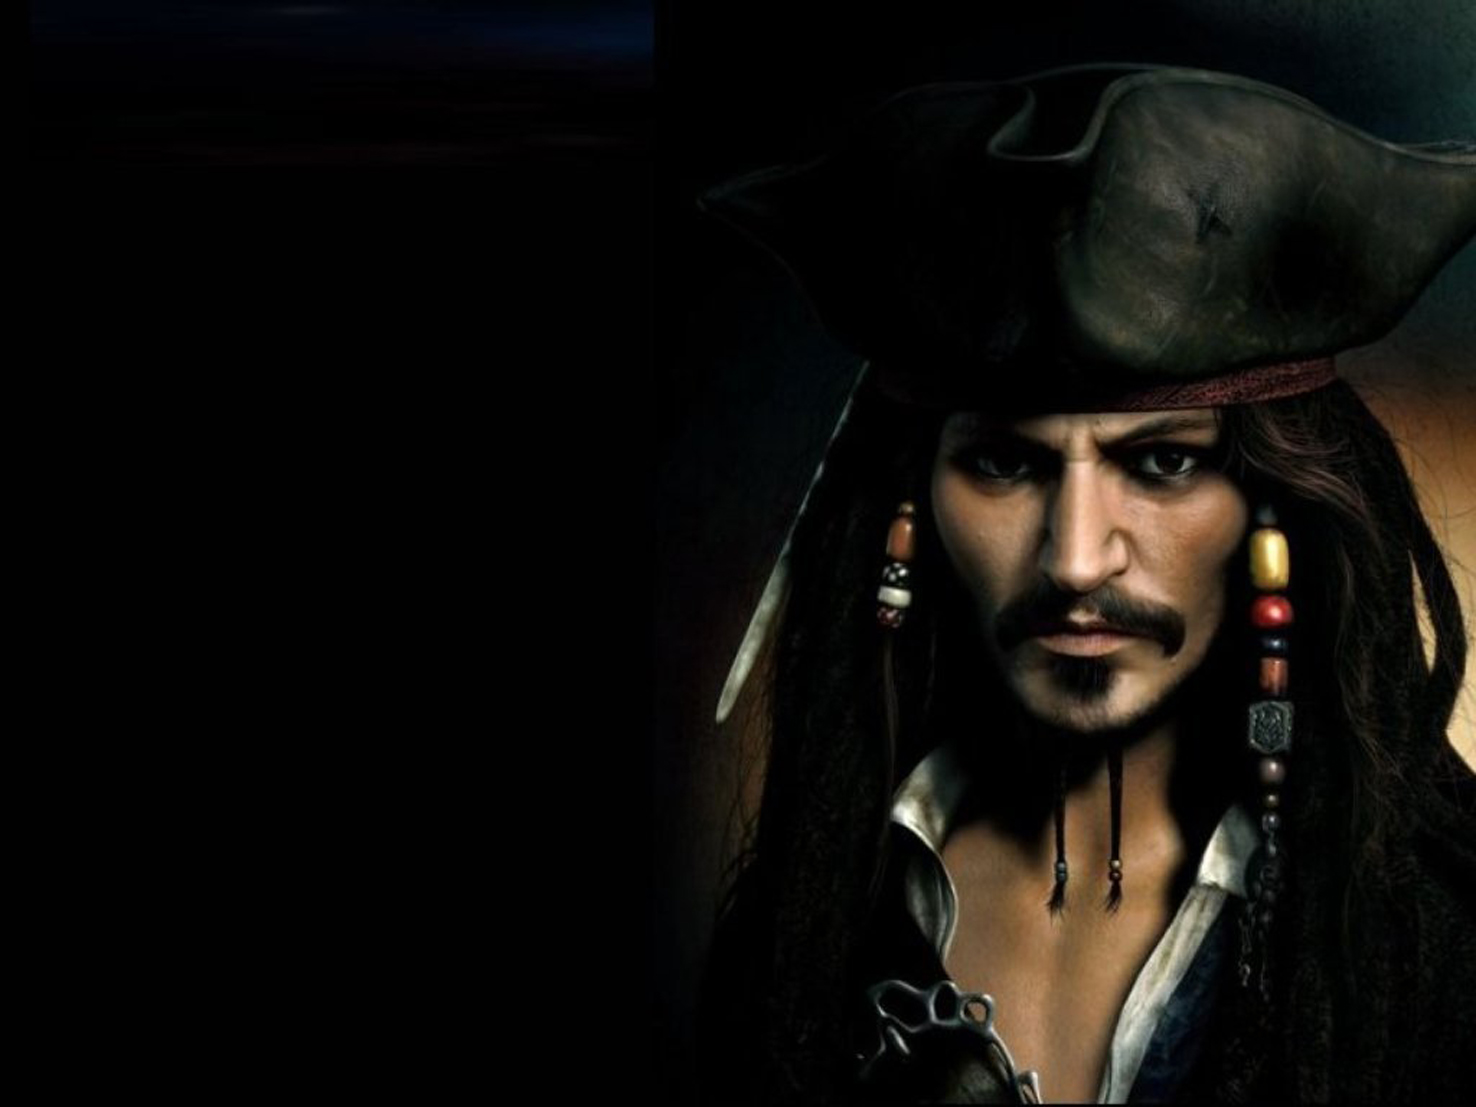 77+] Jack Sparrow Wallpaper - WallpaperSafari